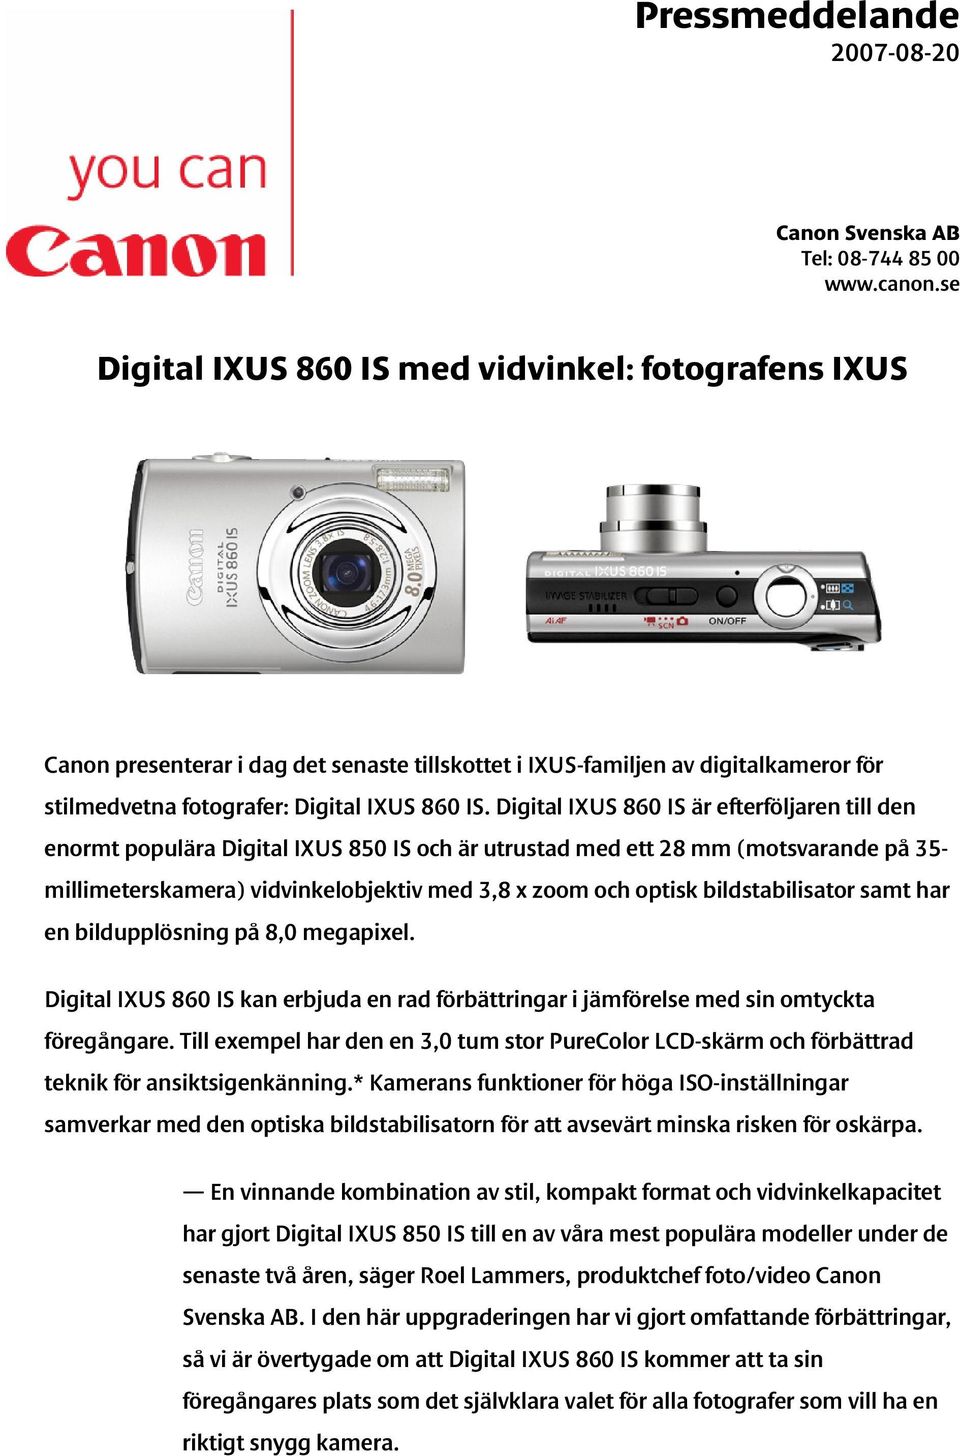 Digital IXUS 860 IS är efterföljaren till den enormt populära Digital IXUS 850 IS och är utrustad med ett 28 mm (motsvarande på 35- millimeterskamera) vidvinkelobjektiv med 3,8 x zoom och optisk